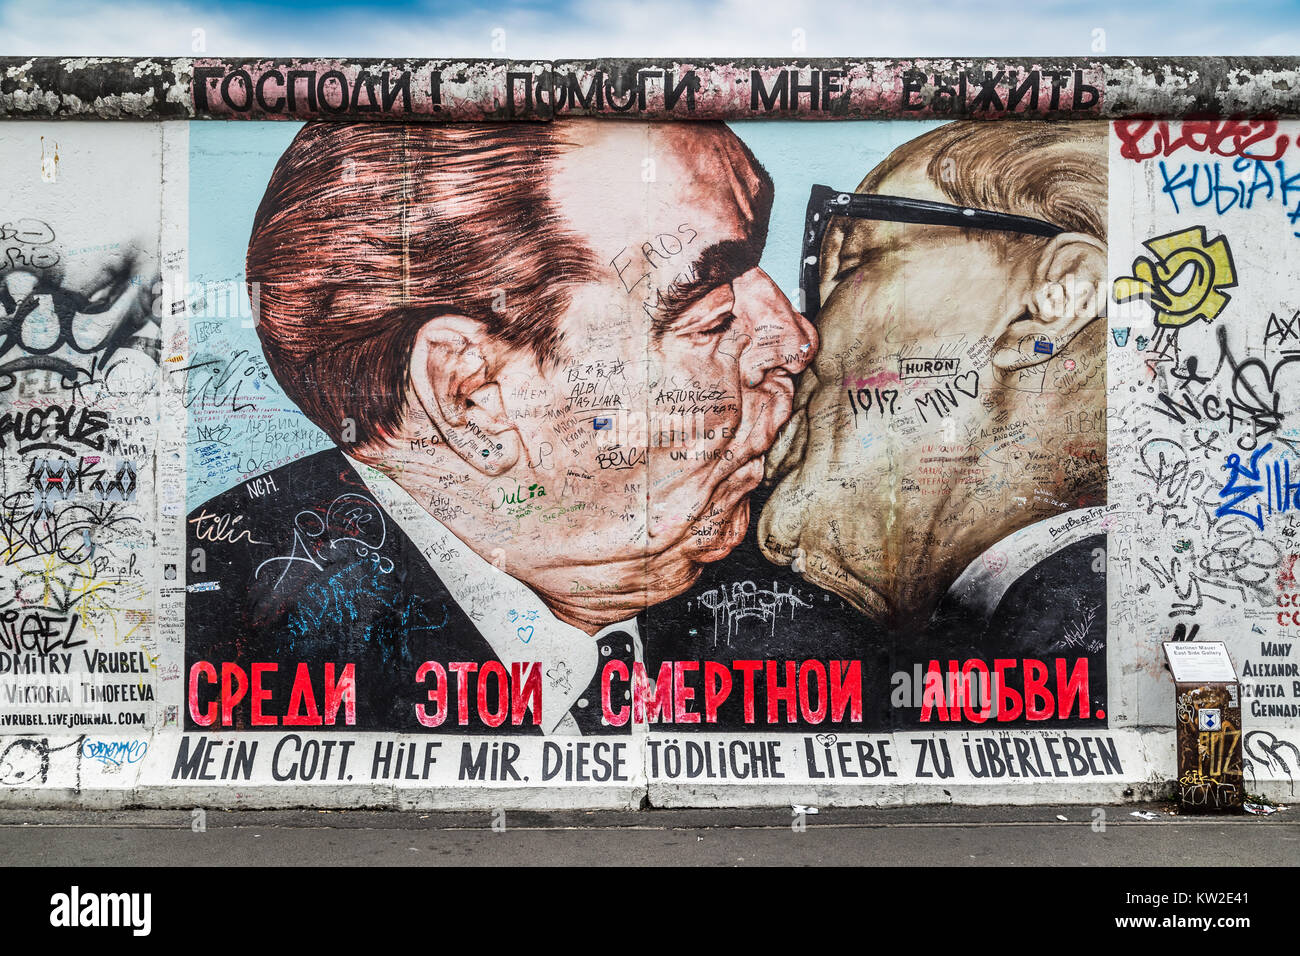 BERLIN, DEUTSCHLAND - 12. Juli: Street Art Graffiti Gemälde "Der Kuss" von Dimitri Vrubel an der berühmten East Side Gallery, der längsten erhaltenen Teil des Stockfoto